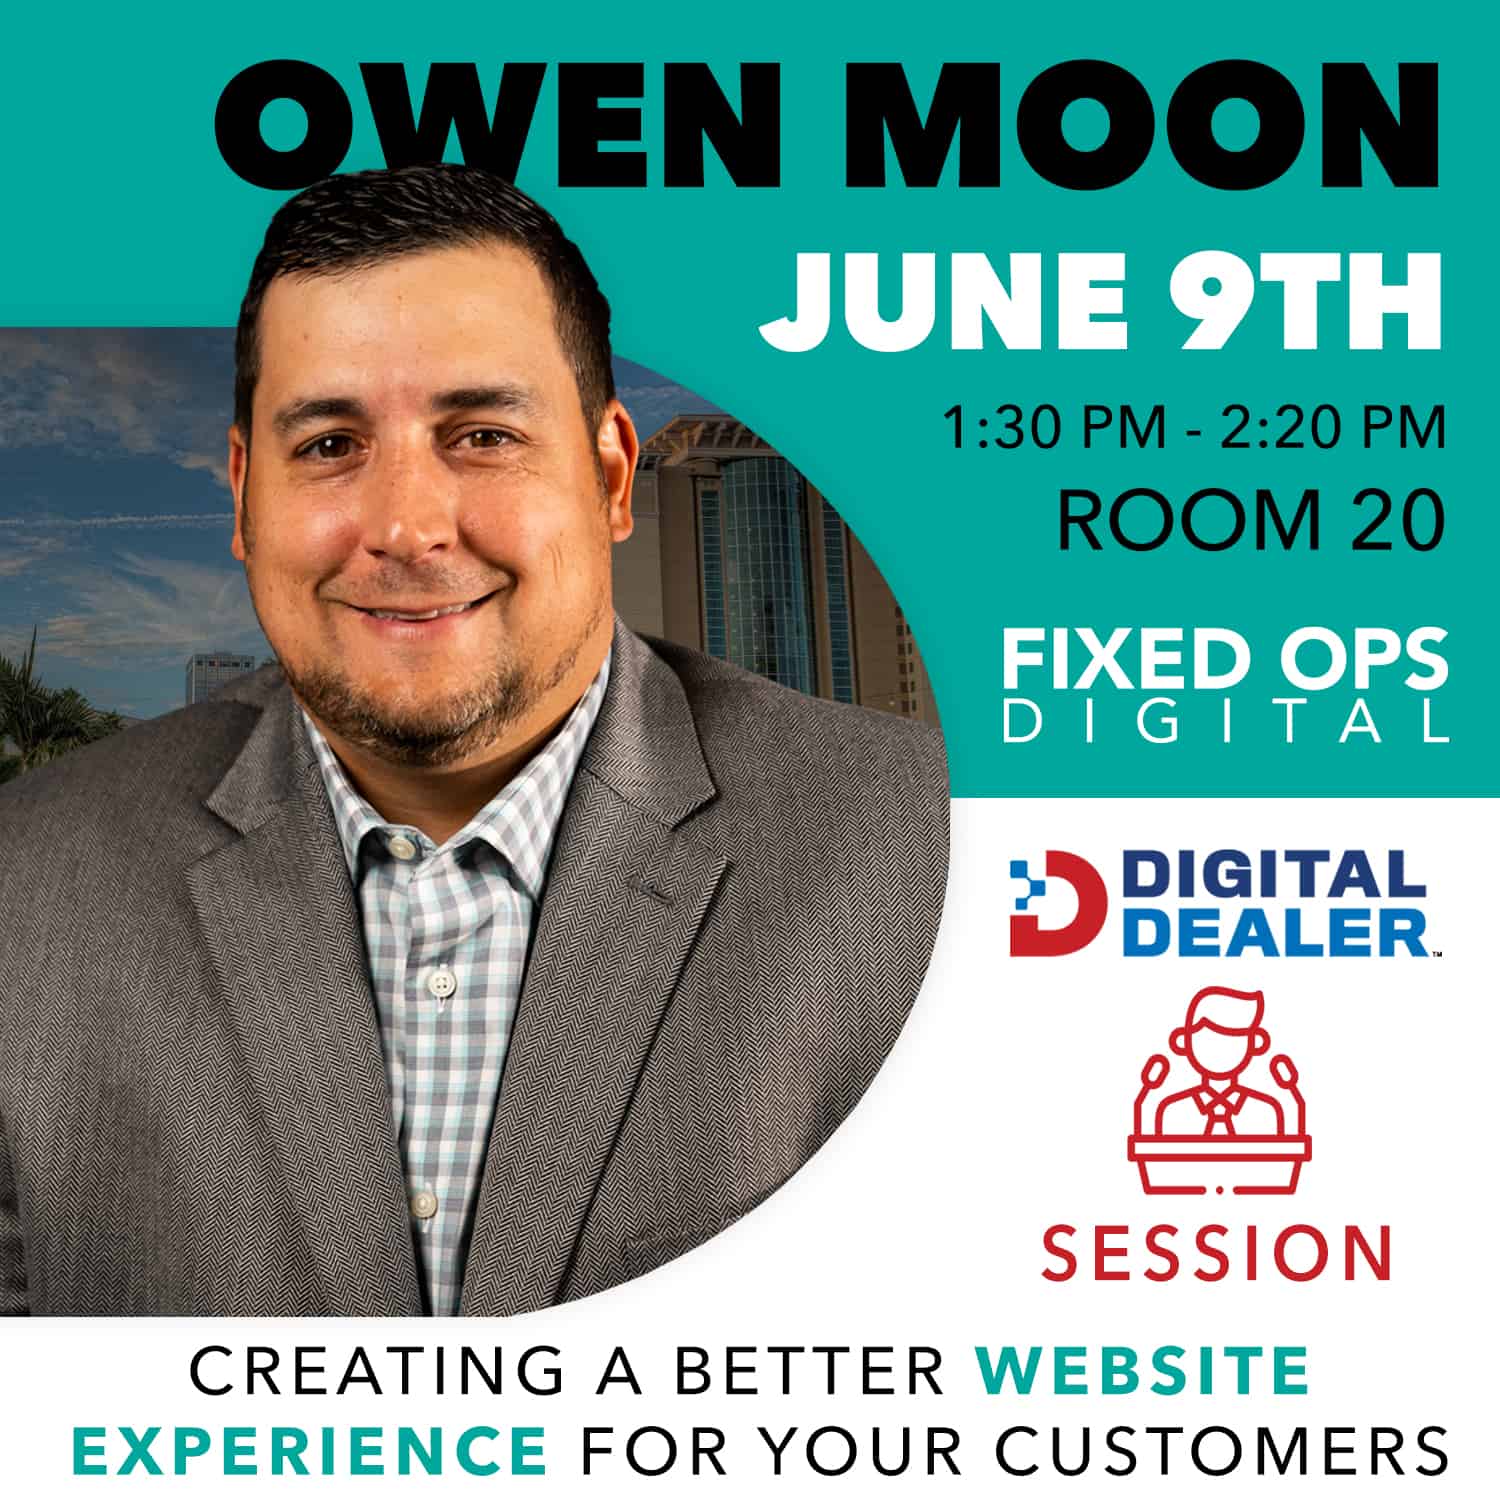 Owen Moon Digital Dealer Session